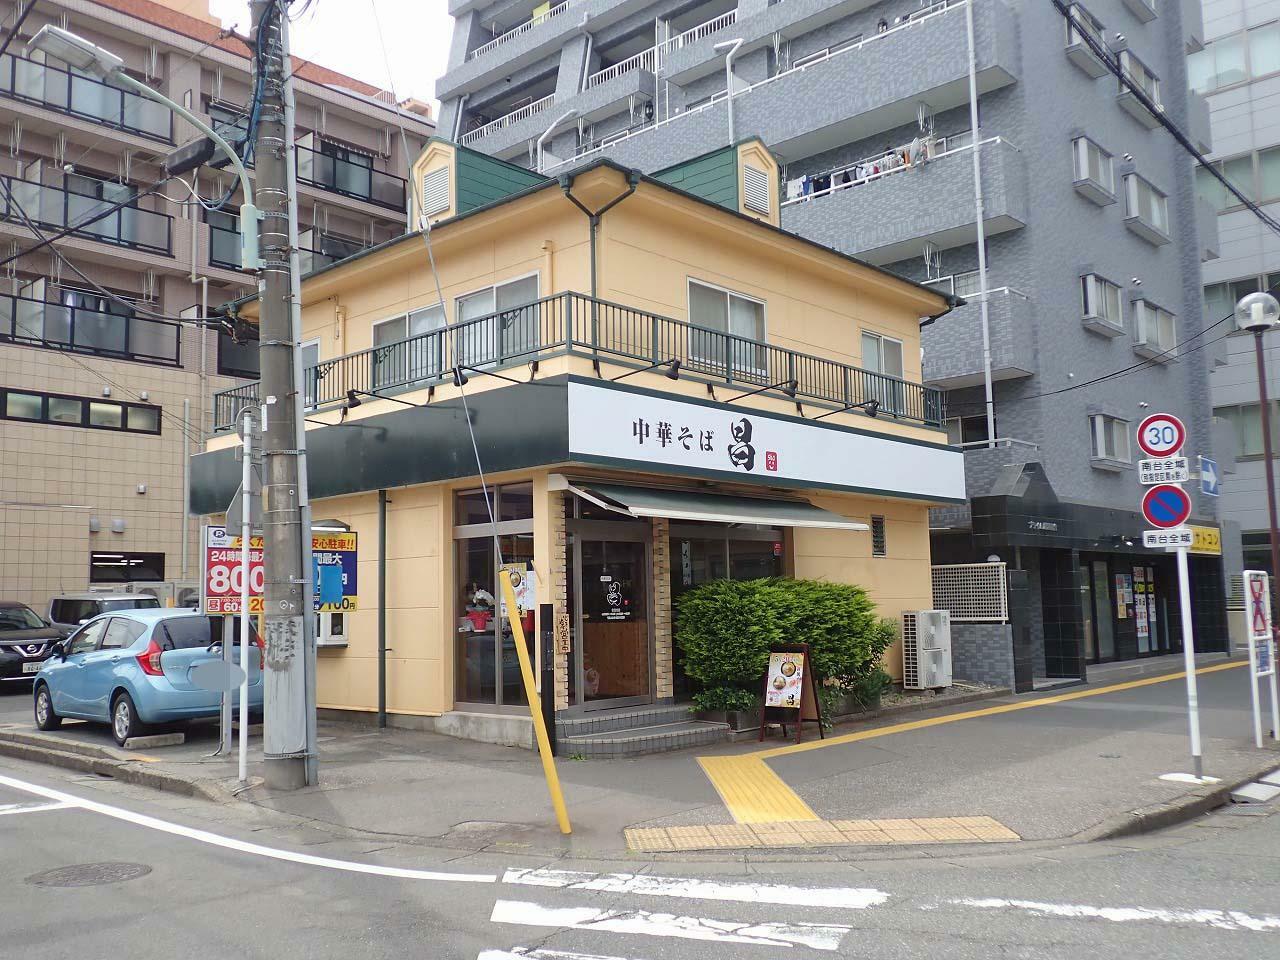 店舗の場所は南大塚駅・南口を出てすぐで、こちらでは以前はイタリアンレストラン「マンジャ」が営業していました